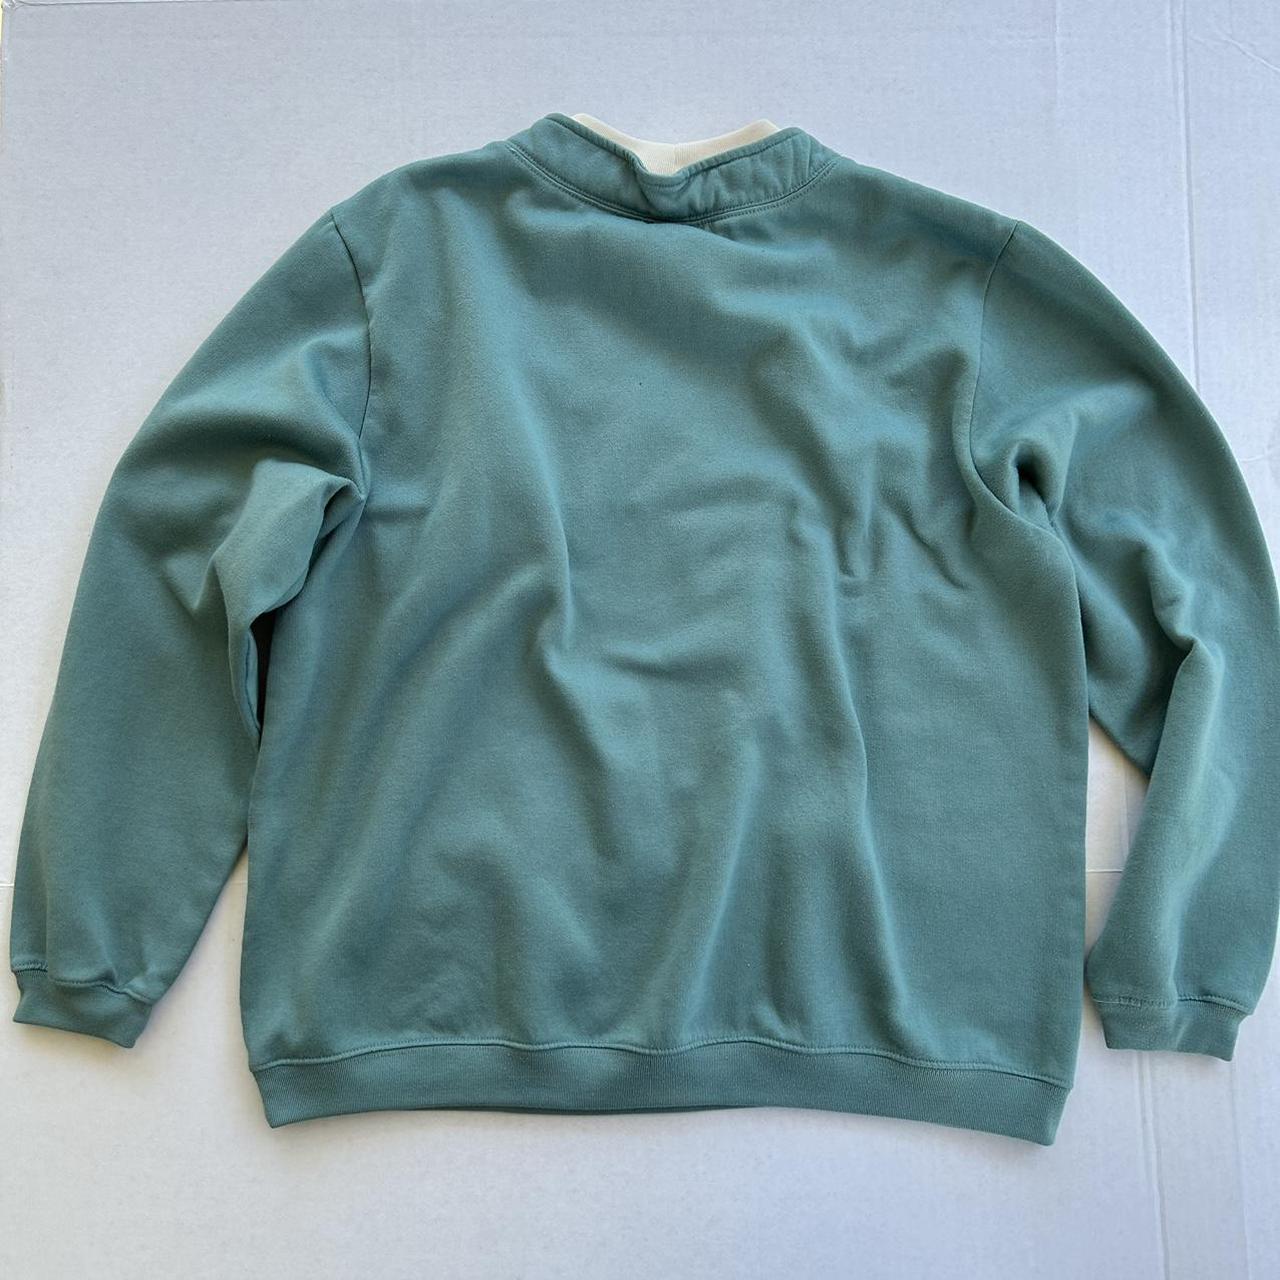 Blair Women's Green and Cream Sweatshirt (2)